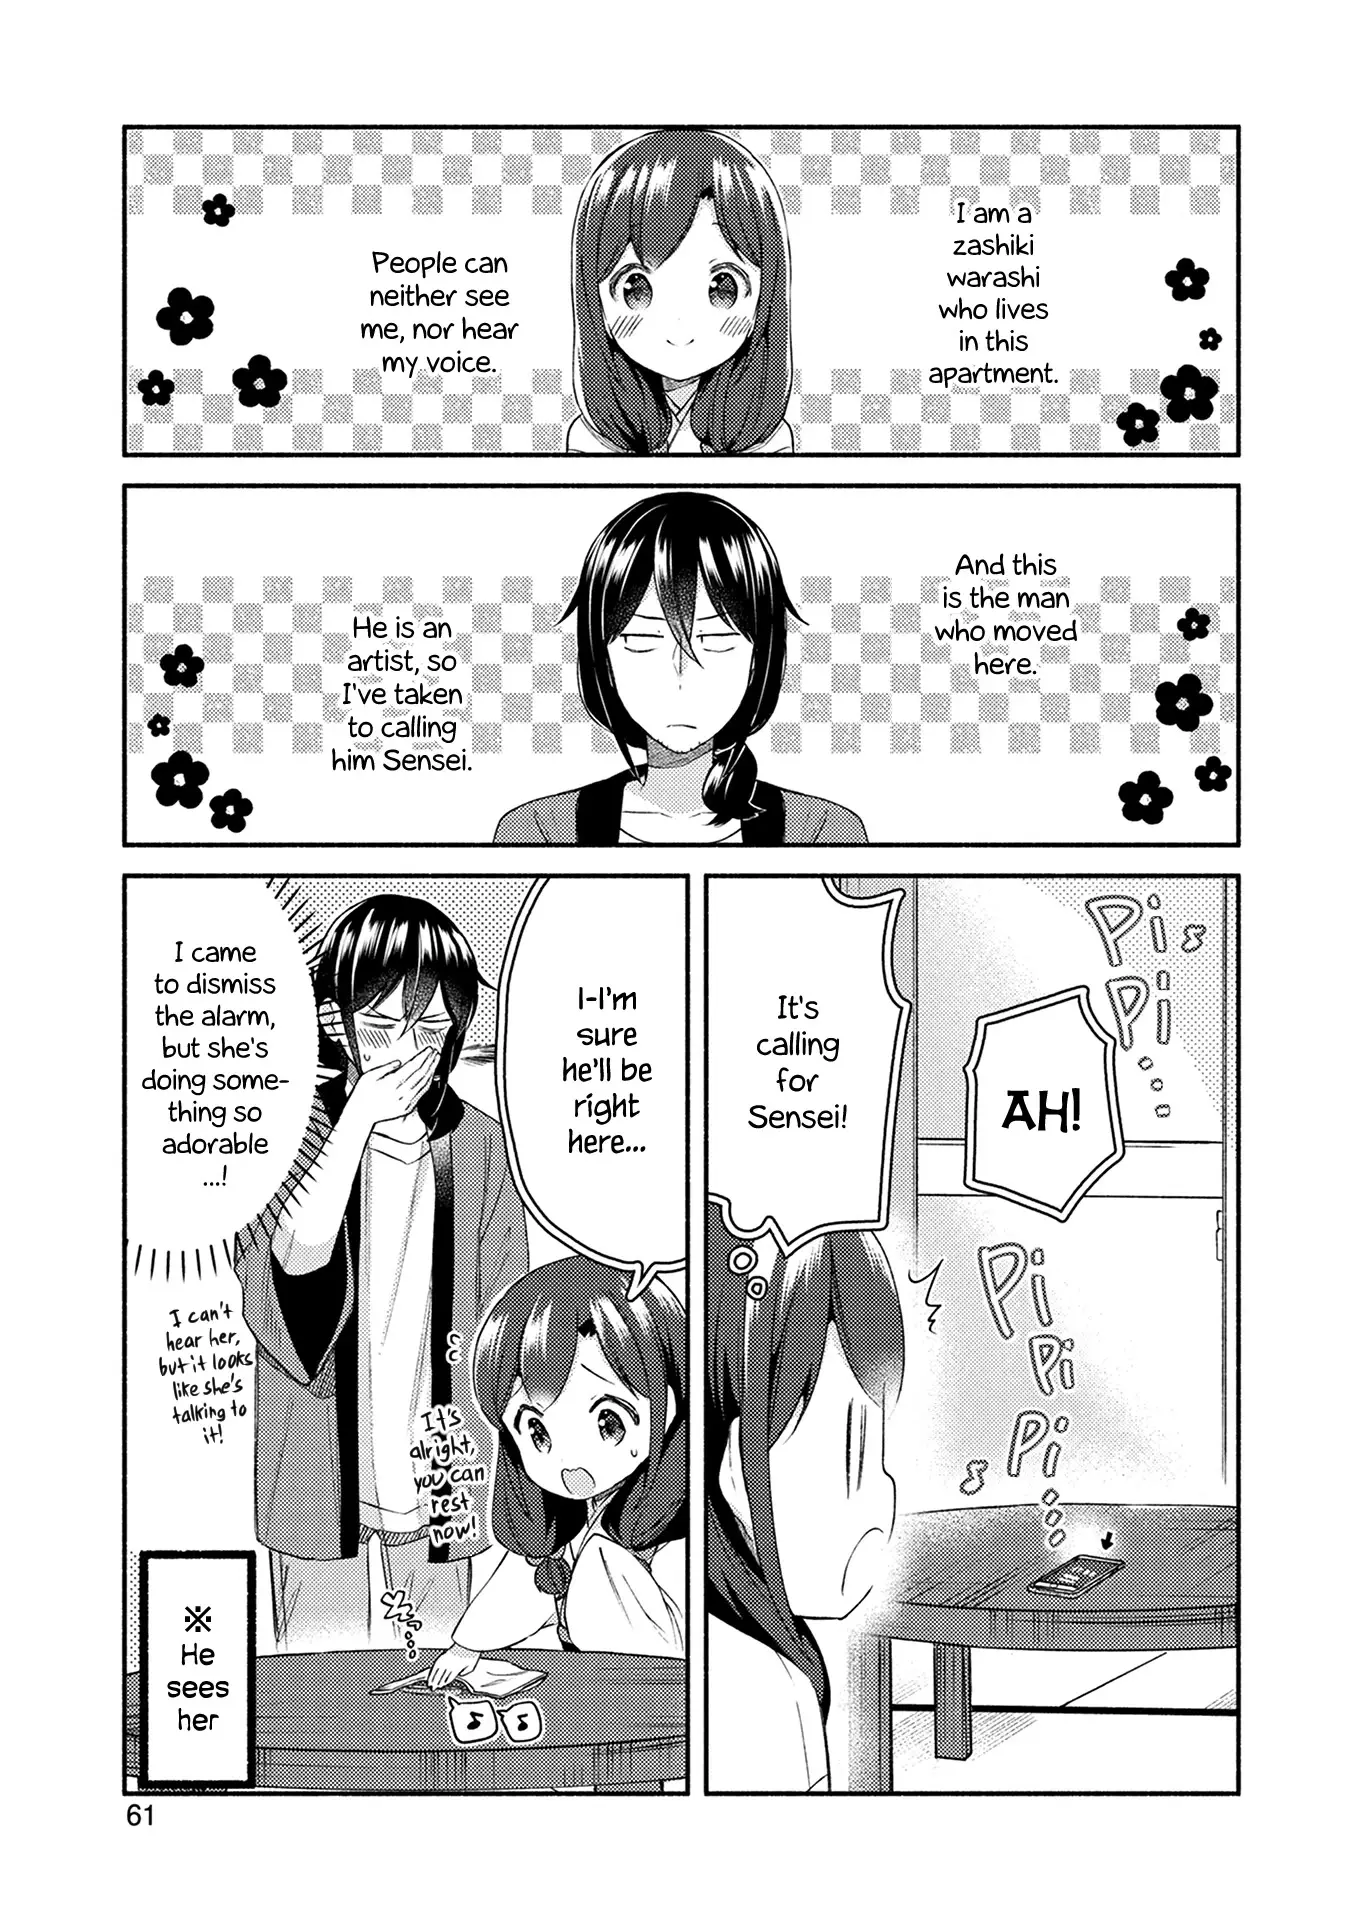 Mangaka-Sensei To Zashiki Warashi - 26 page 1-b8758e20